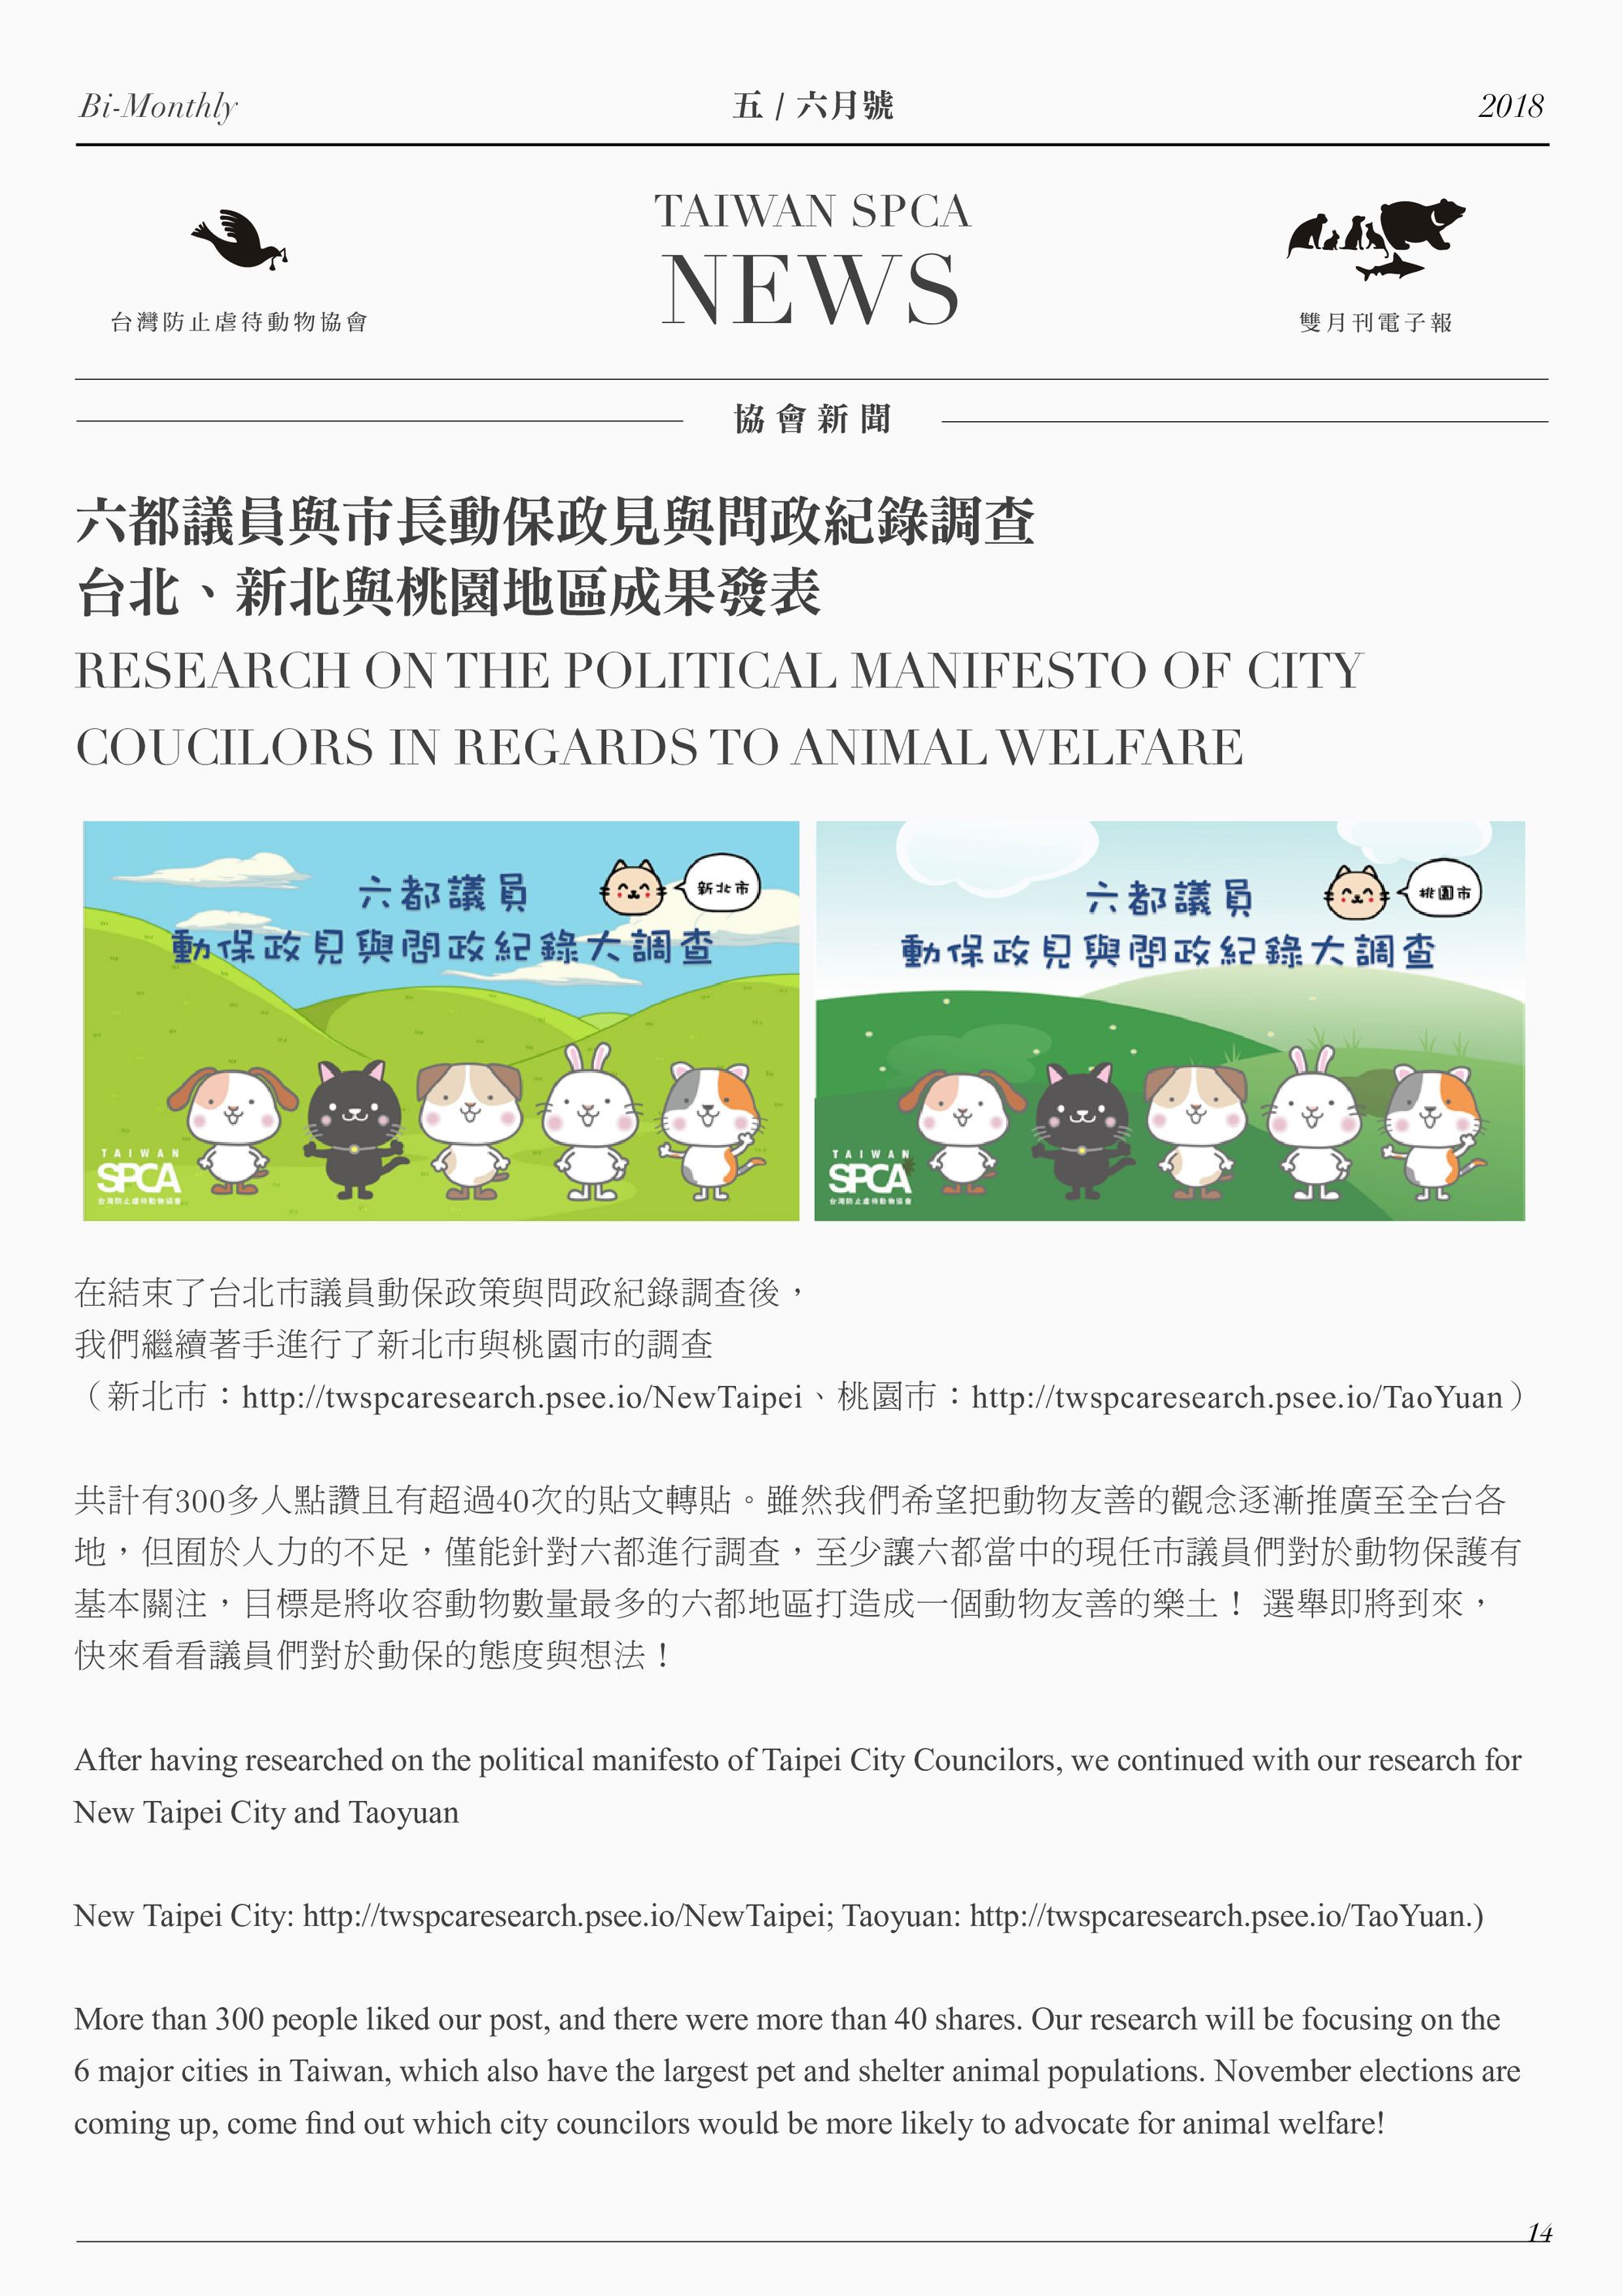 六都議員與市長動保政見與問政紀錄調查 台北、新北與桃園地區成果發表